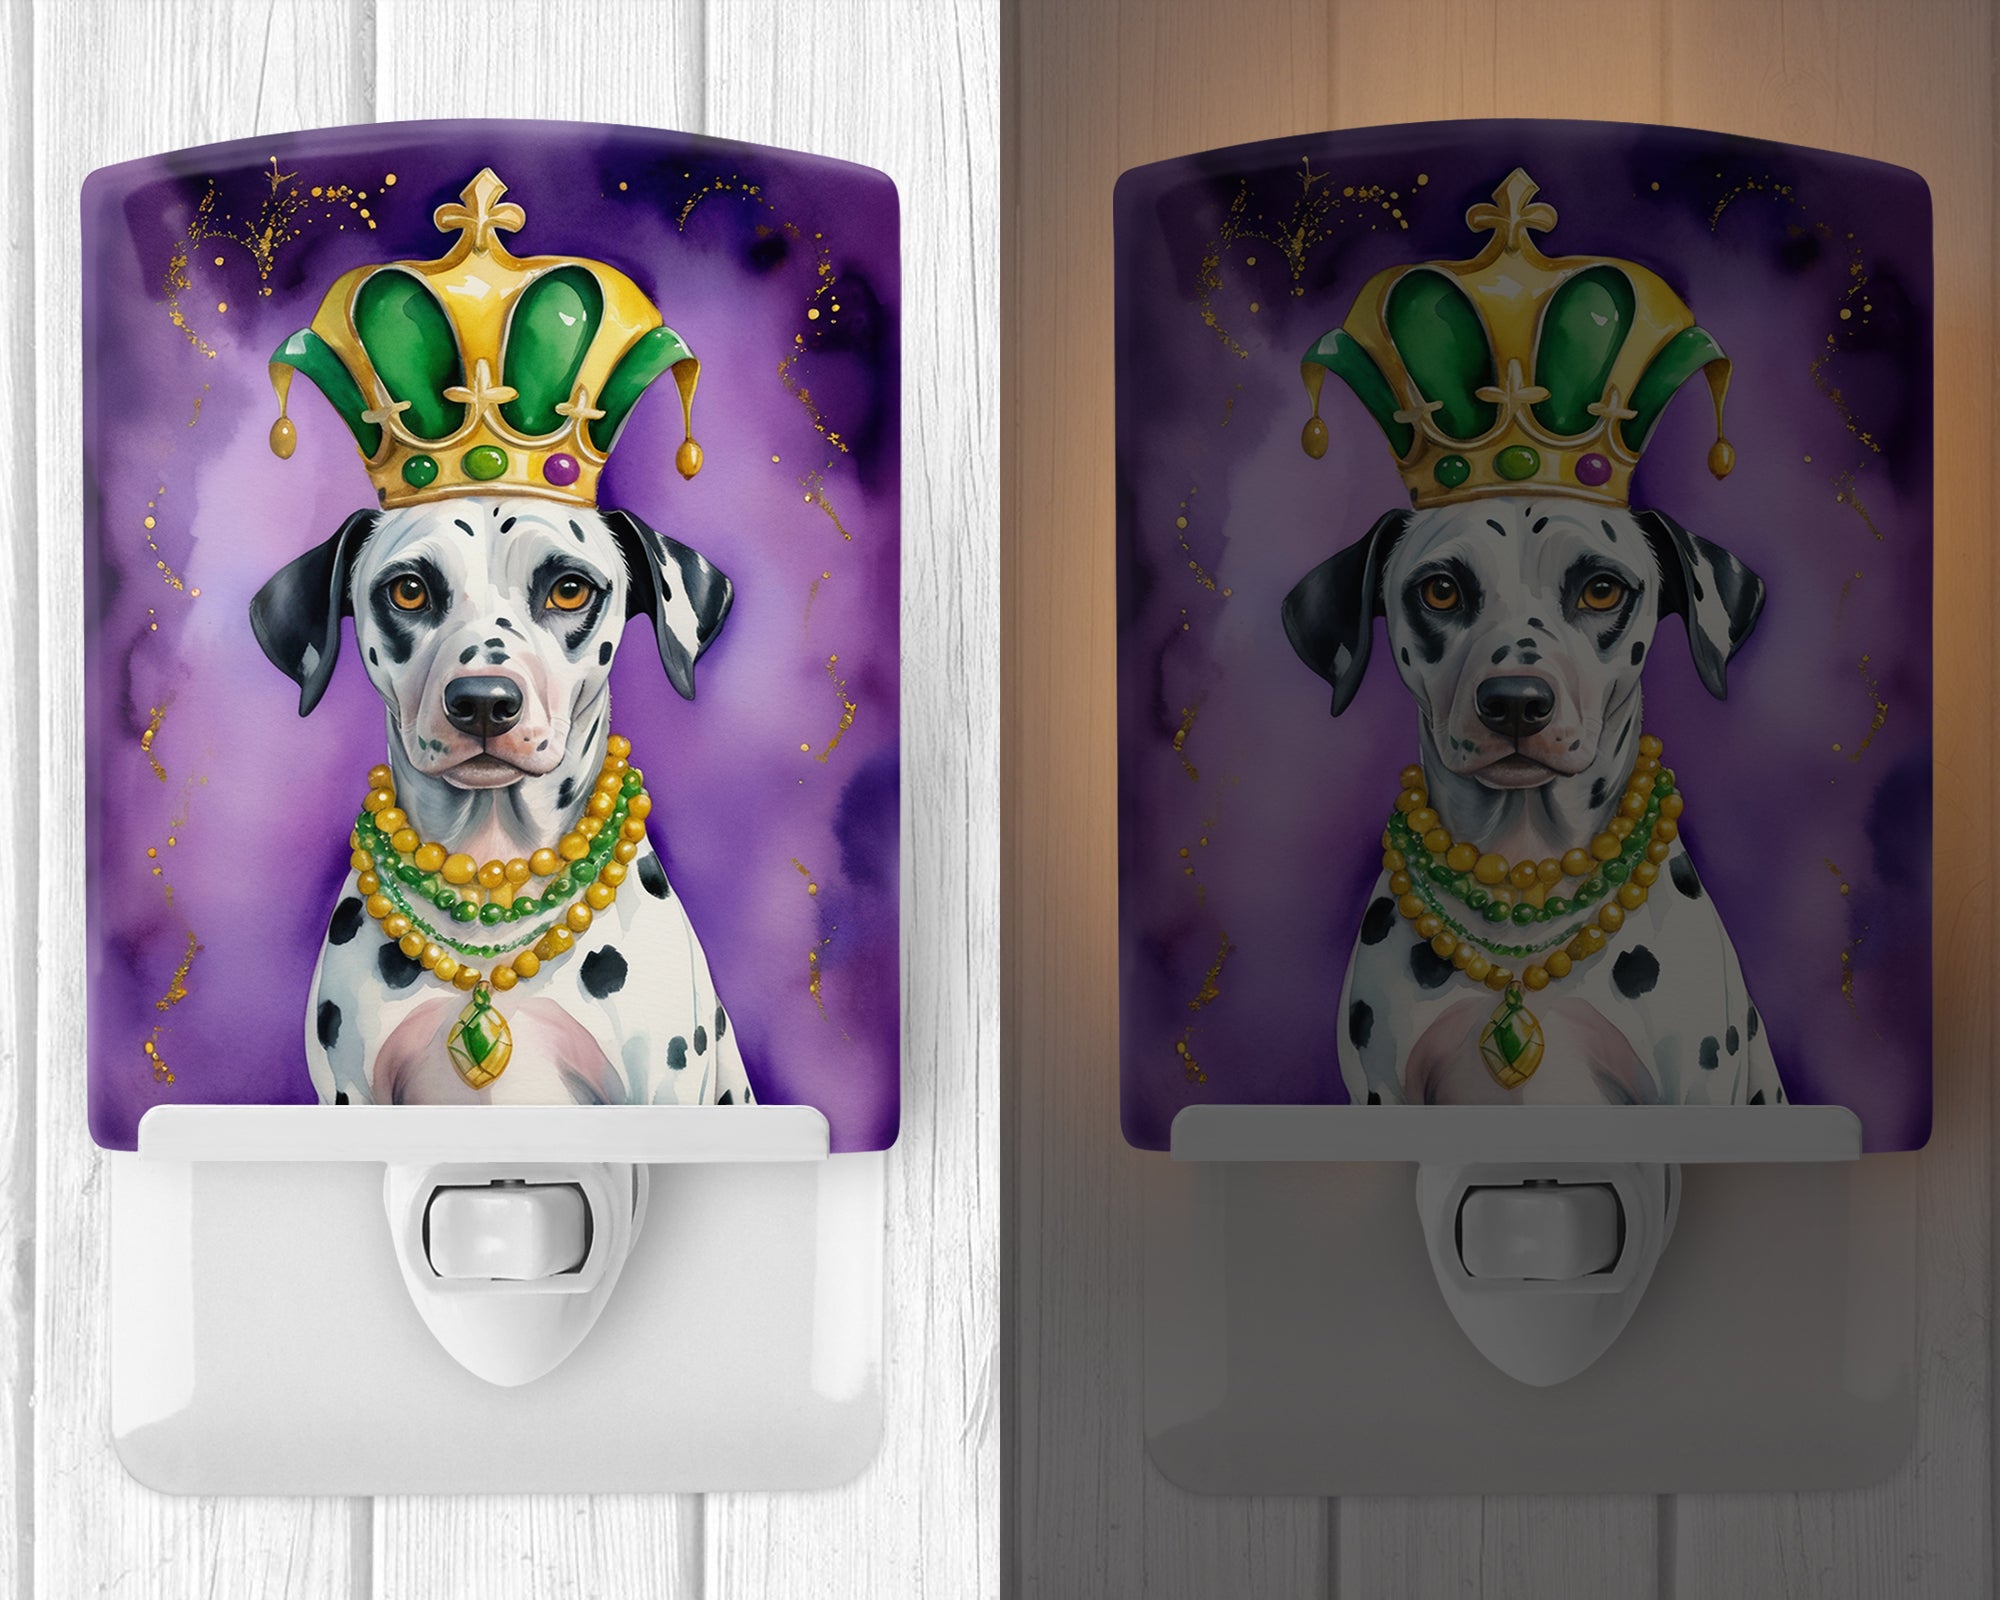 Buy this Dalmatian King of Mardi Gras Ceramic Night Light